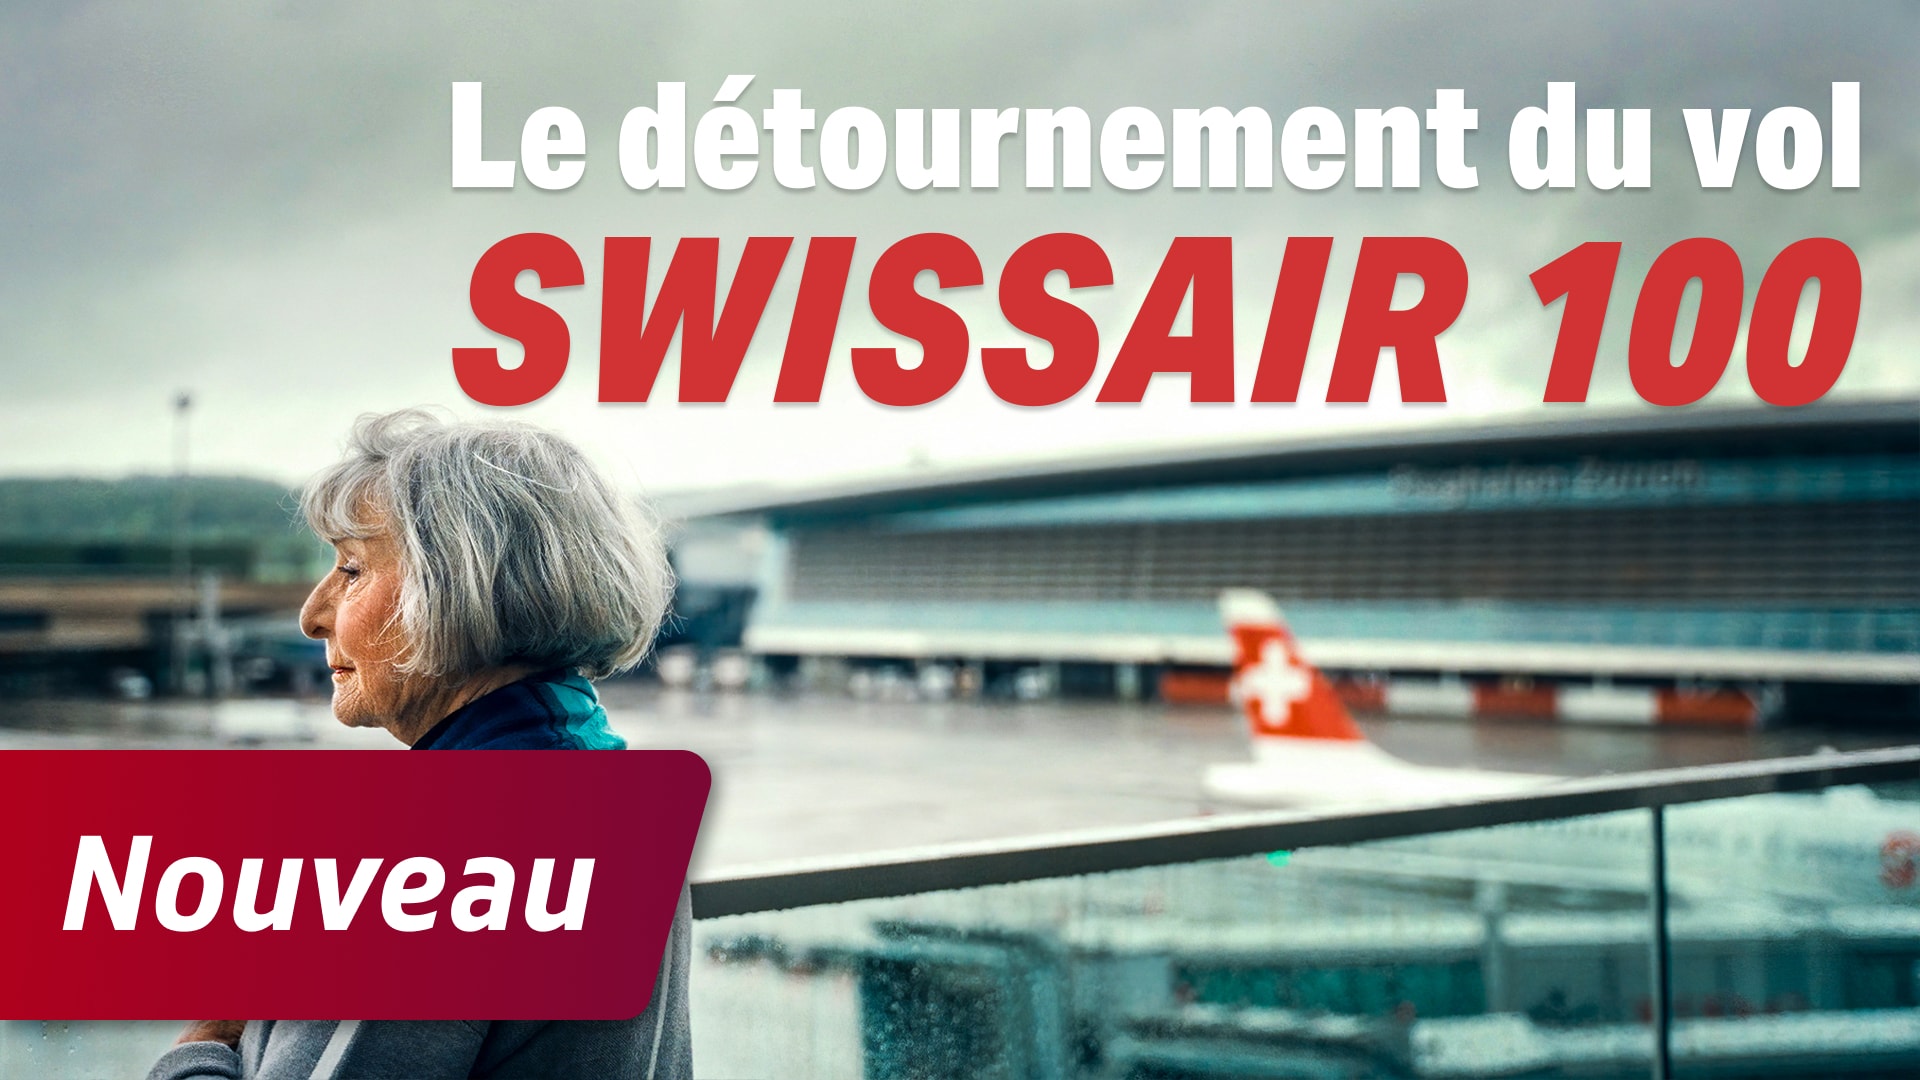 Le détournement du vol Swissair 100 